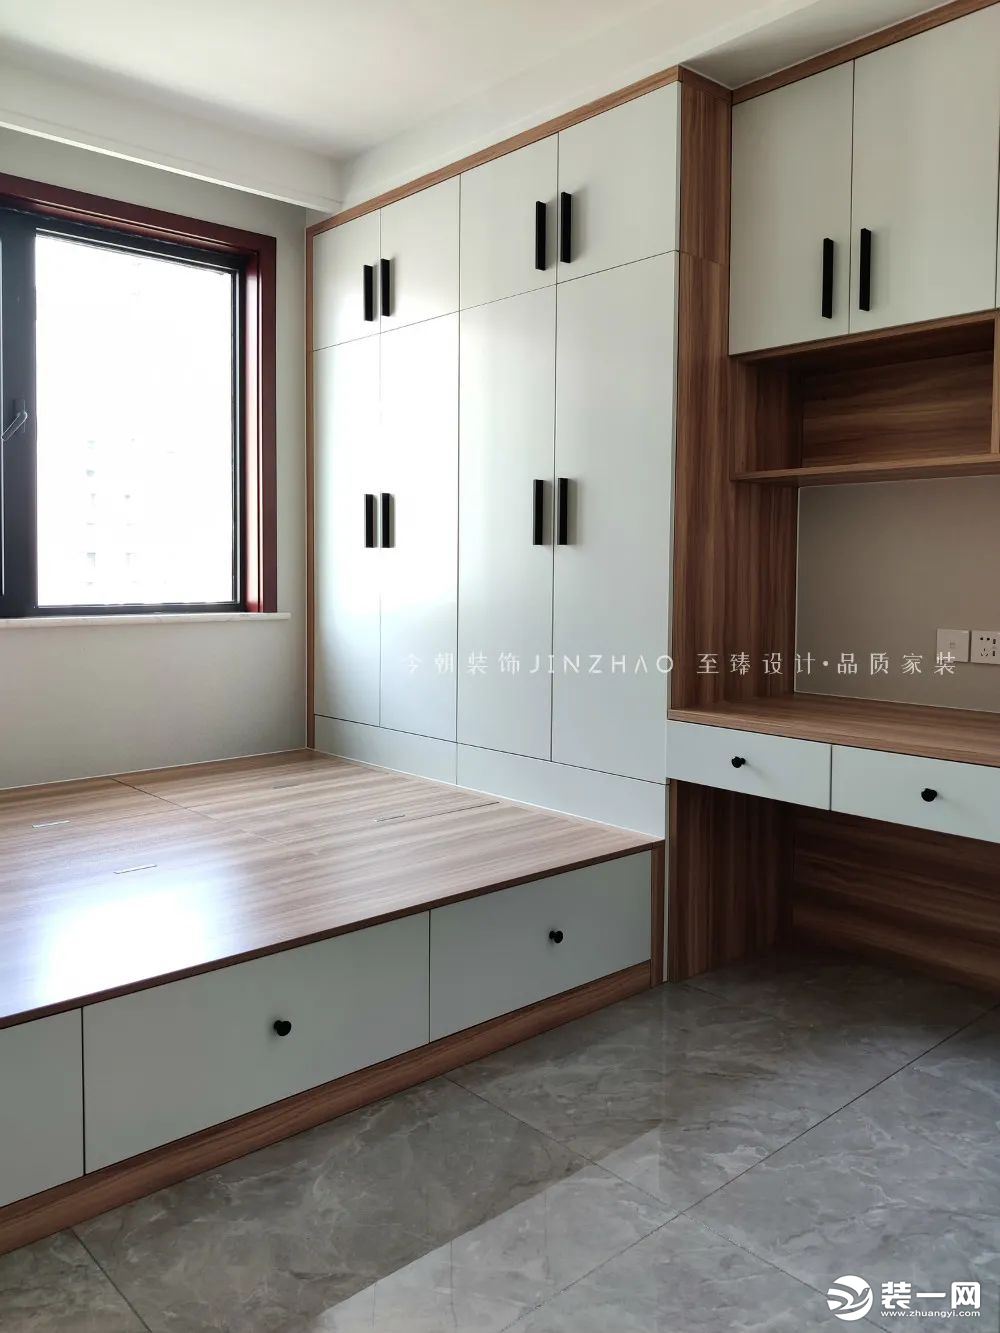 空间较小，采用榻榻米布局，床衣柜书桌一体设计，充分利用空间。